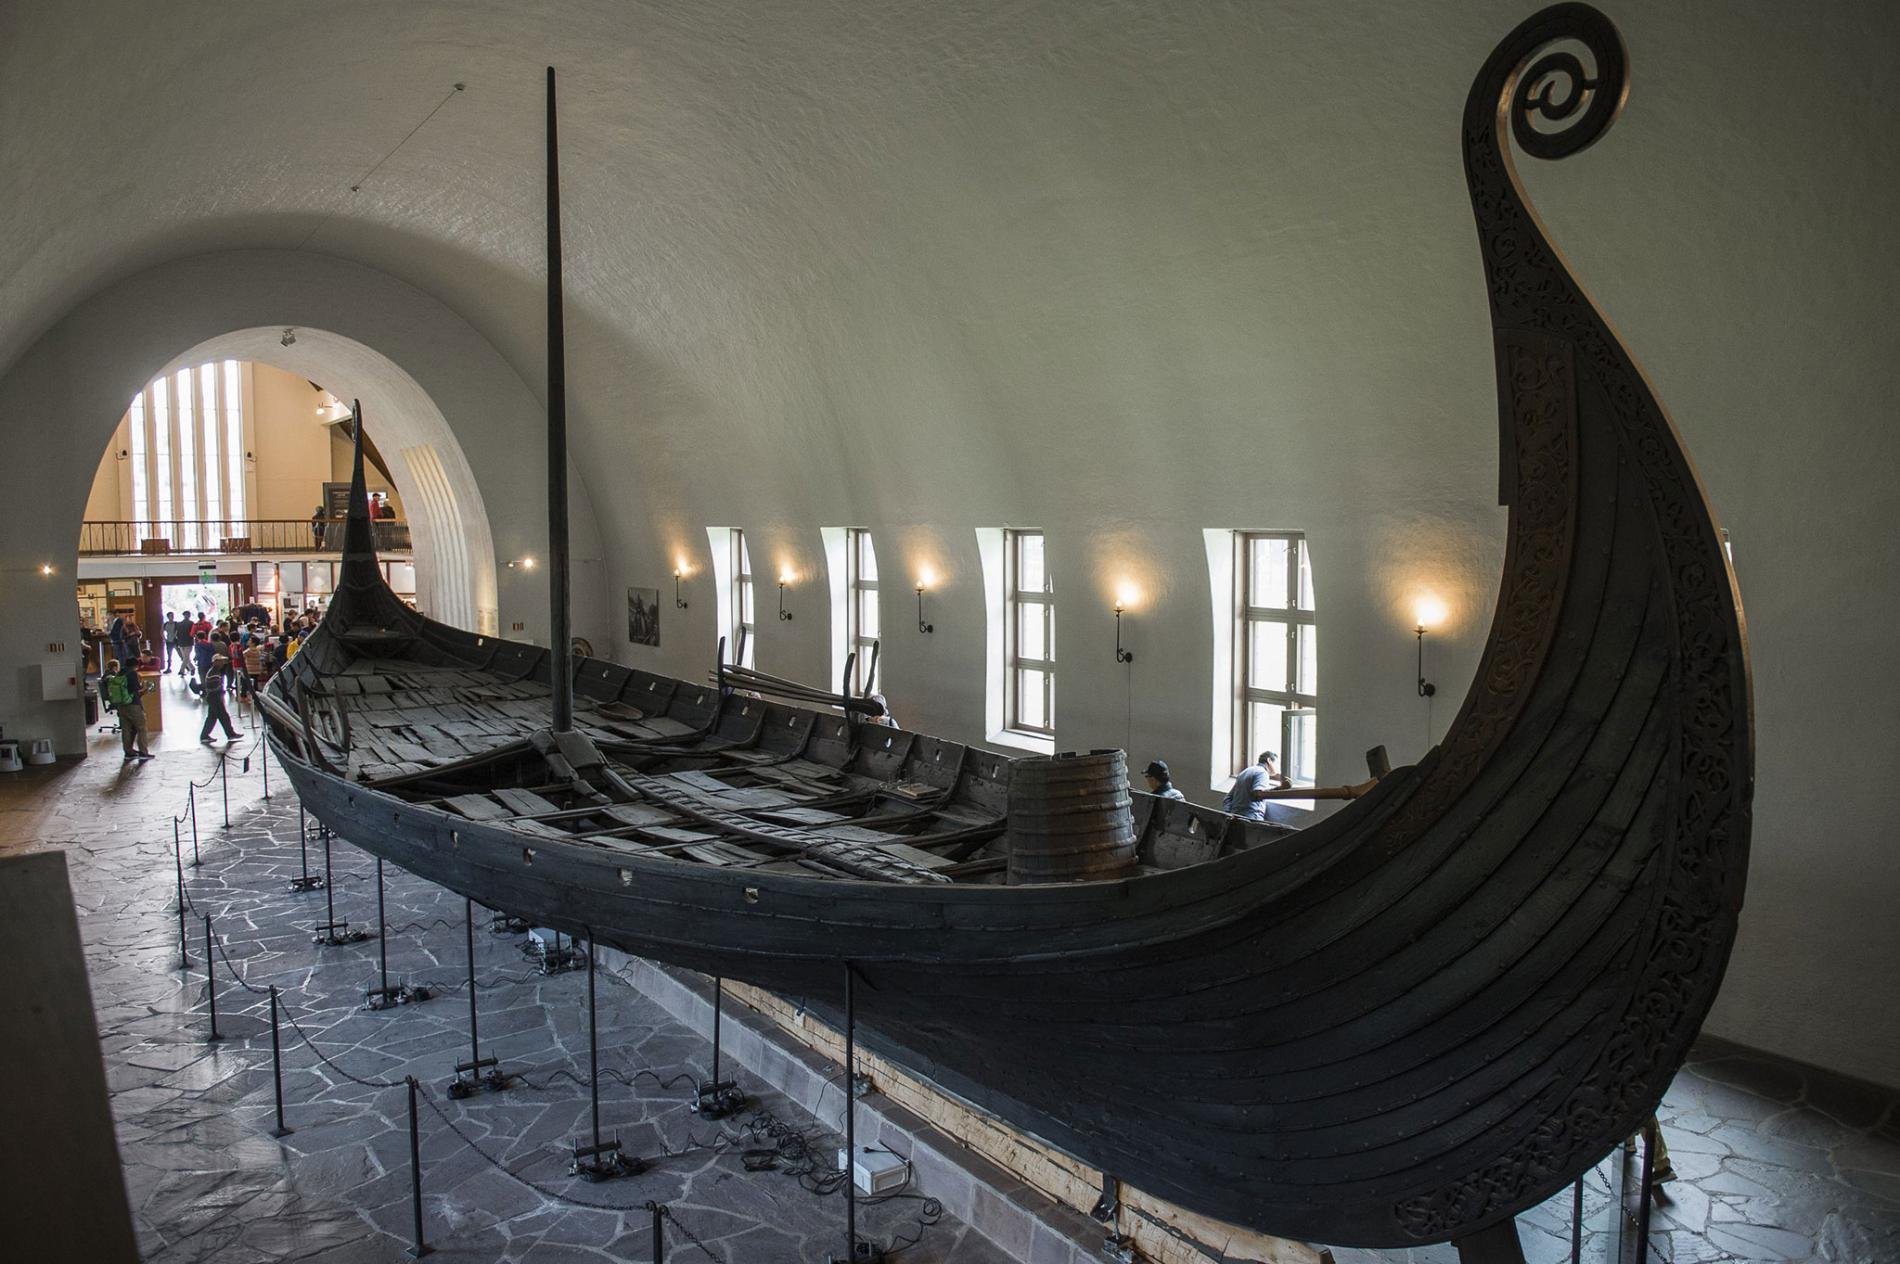 Βρέθηκε πλοίο Βίκινγκ θαμμένο σε αγρόκτημα στη Νορβηγία (vid)